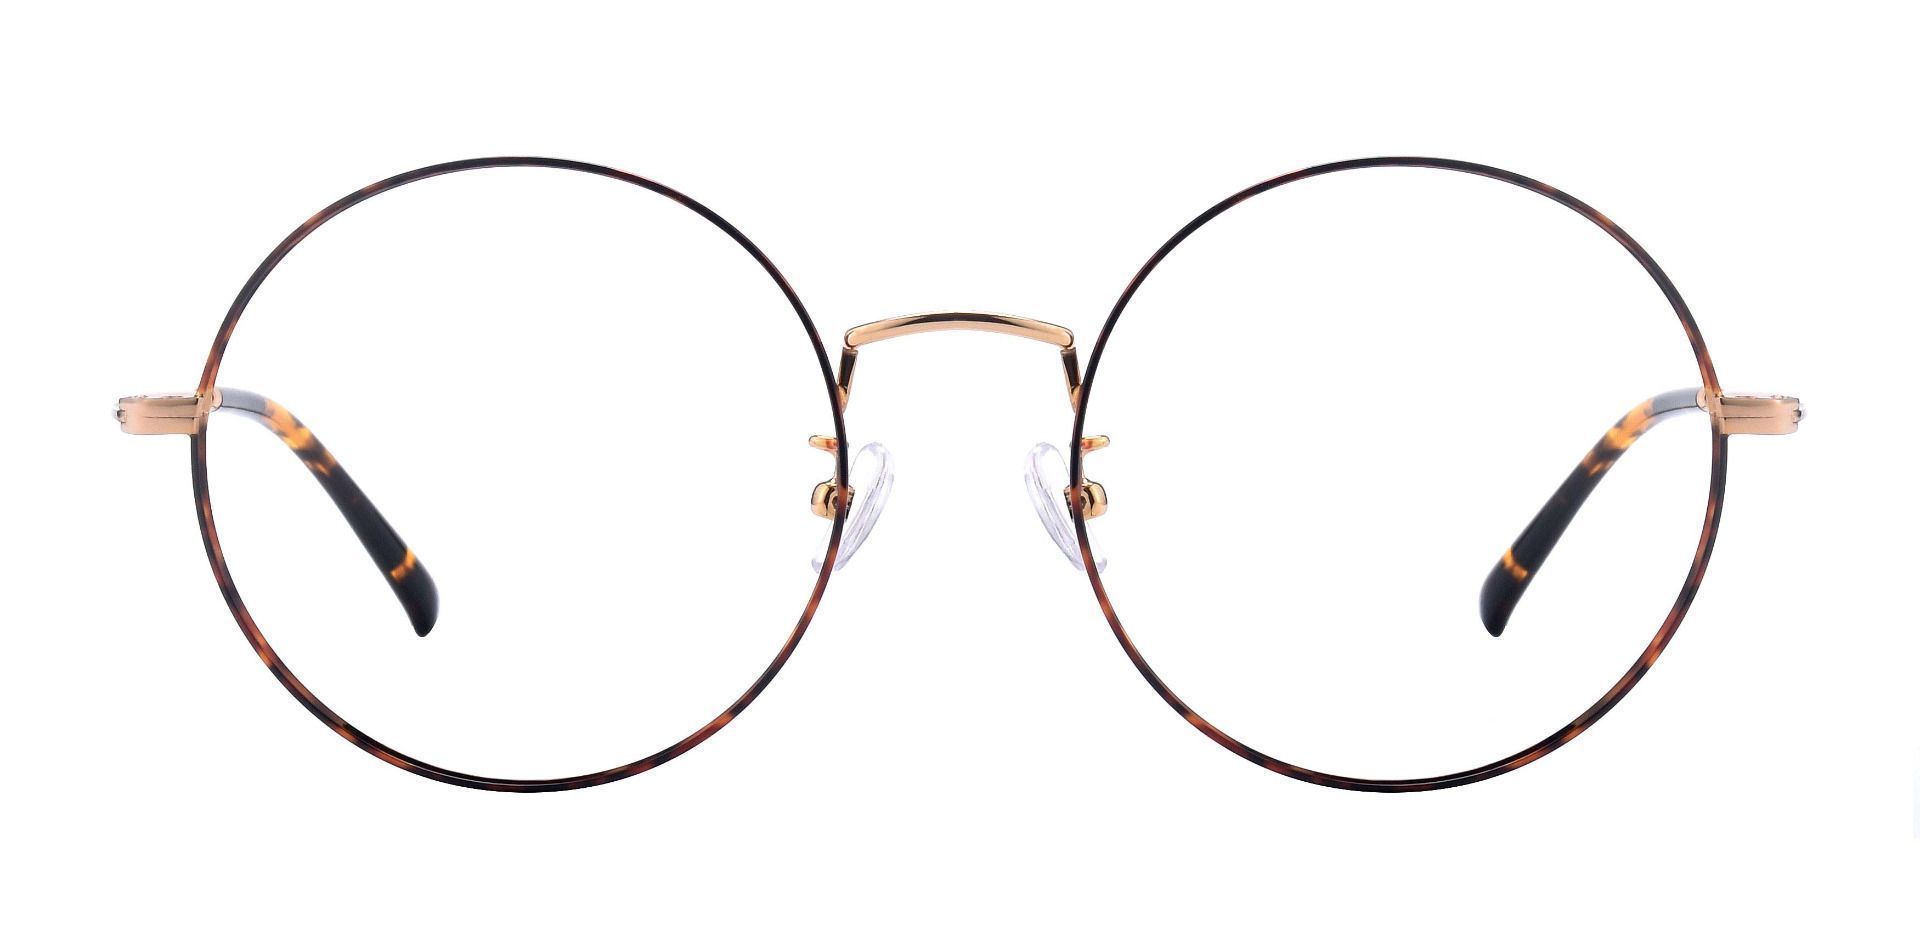 Sawyer Round Eyeglasses Frame - Tortoise/gold